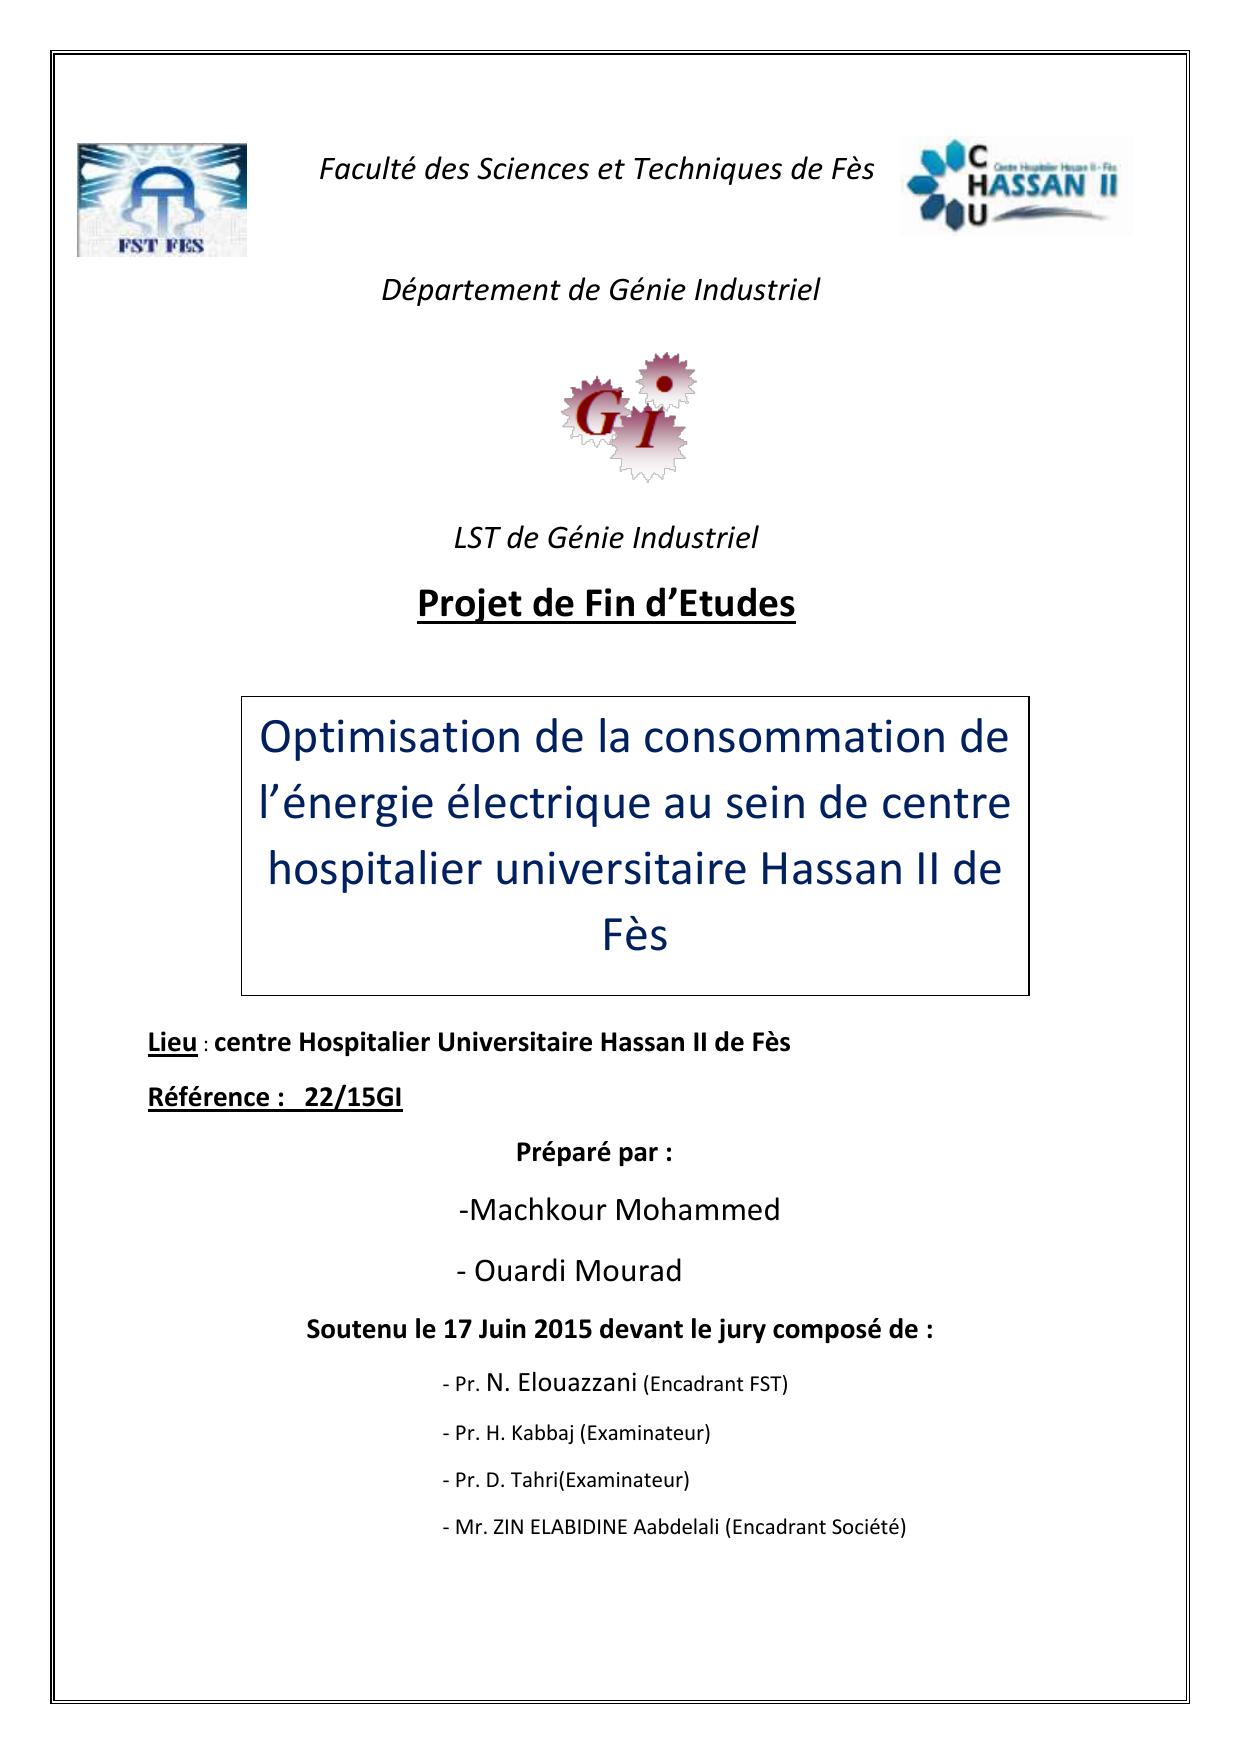 Optimisation de la consommation de l’énergie électrique au sein de centre hospitalier universitaire Hassan II de Fès